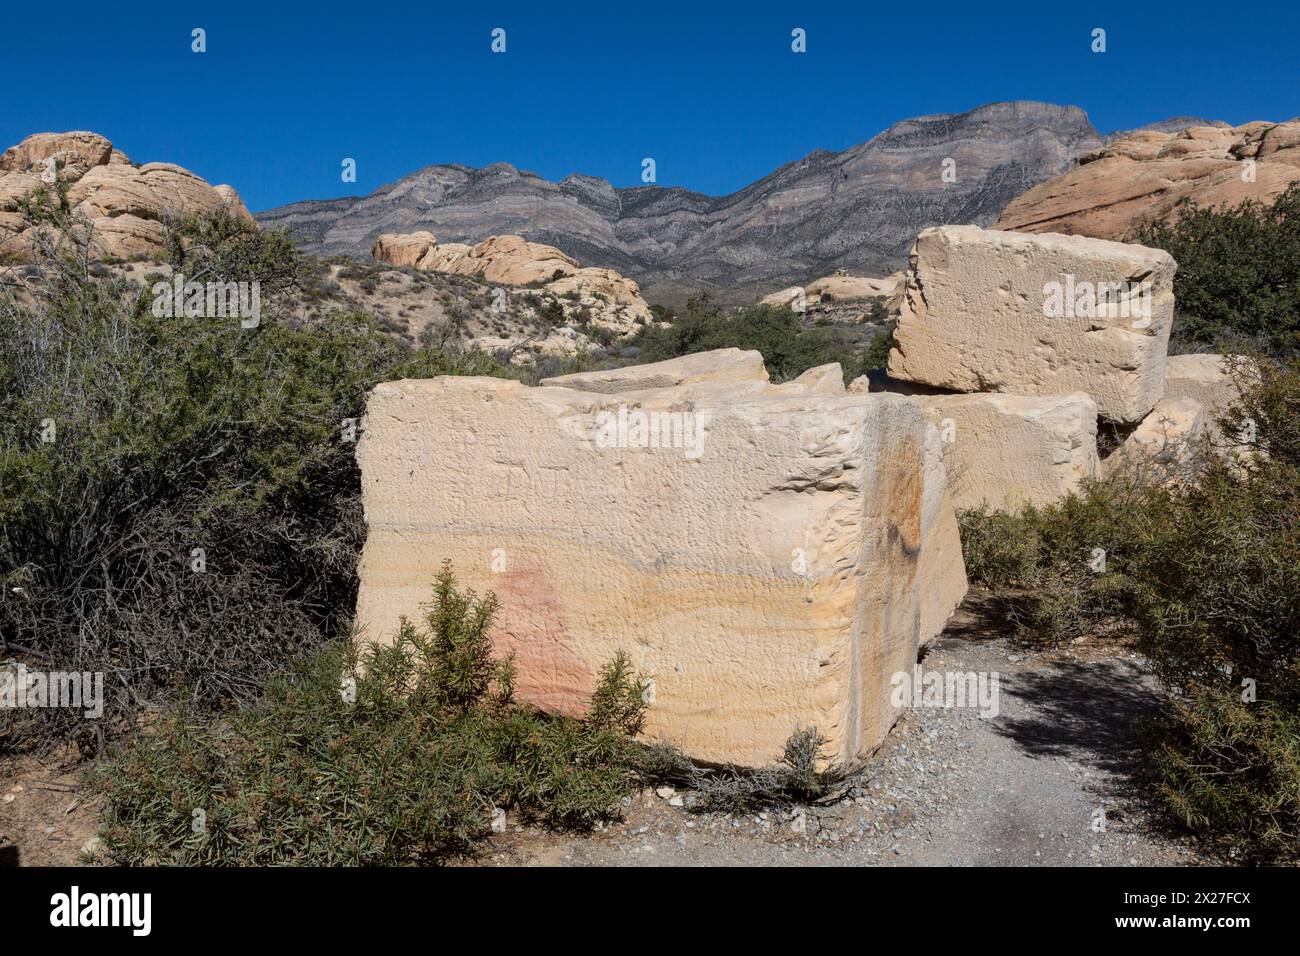 Red Rock Canyon, Nevada. Les blocs de pierre d'une carrière de grès qui a cessé ses opérations au début des années 1900. Banque D'Images